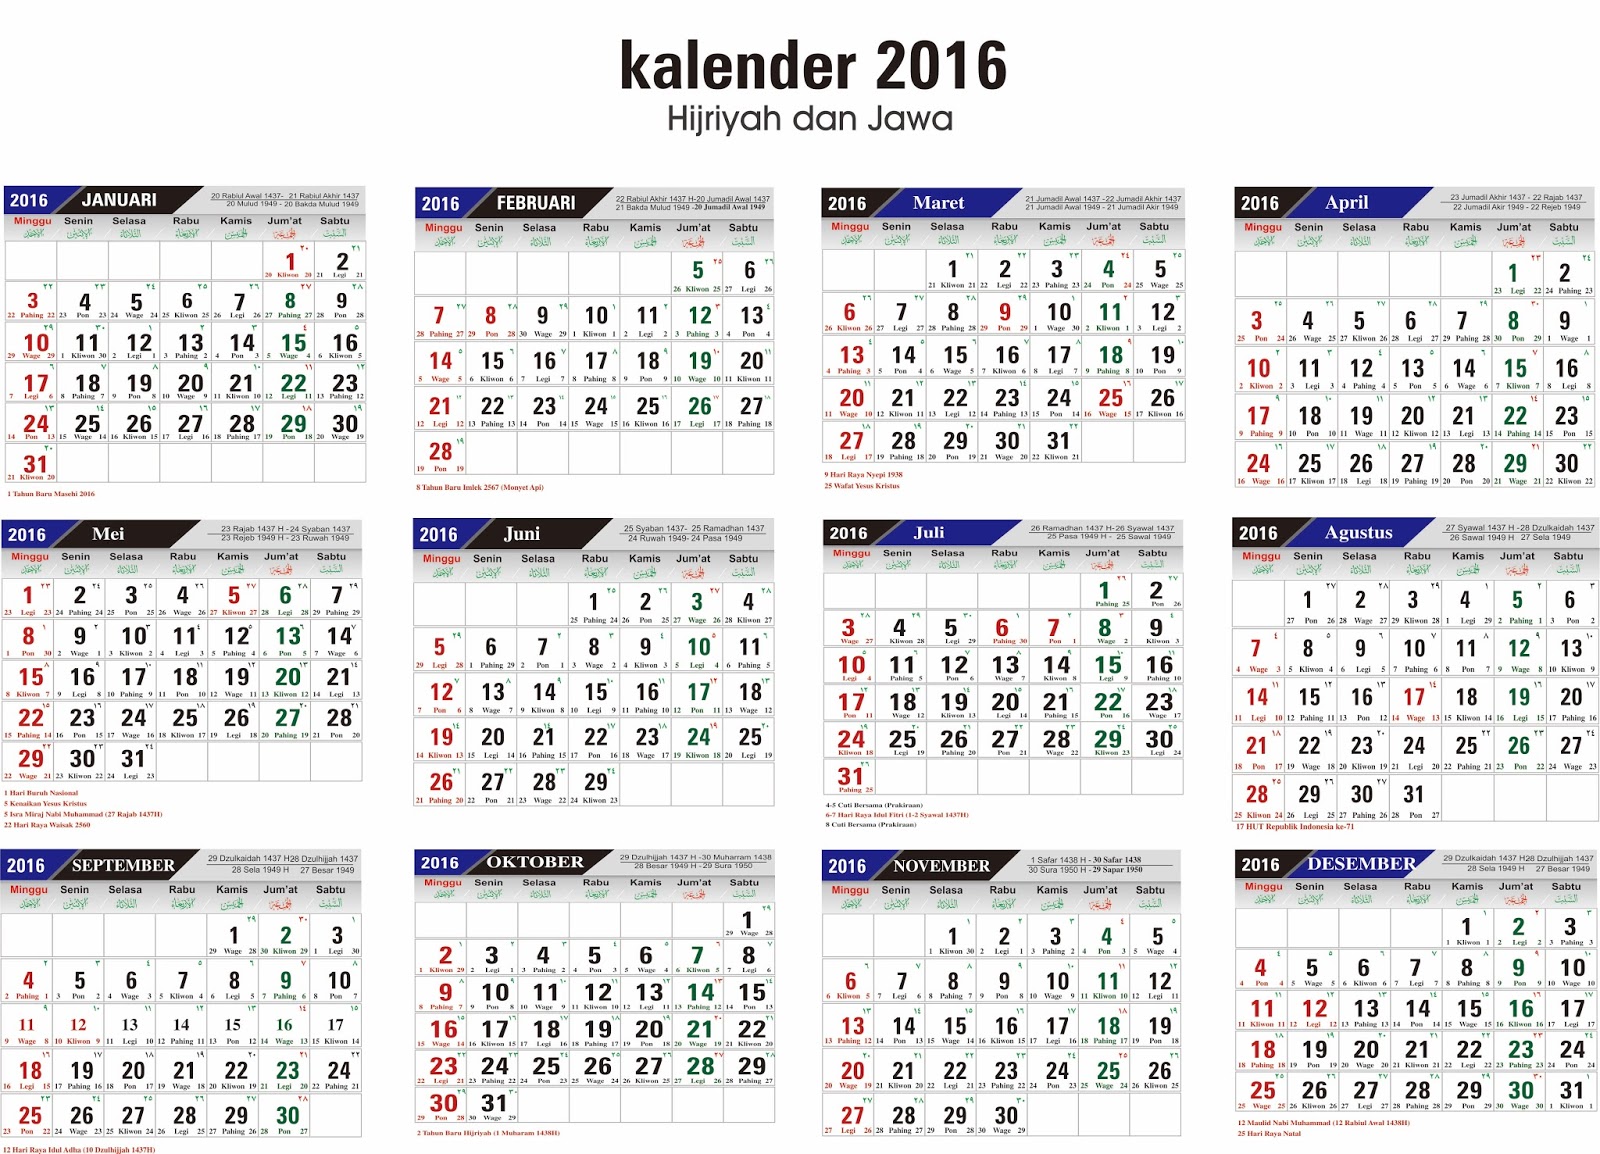 Kalender 2016 Lengkap - Terbarutau